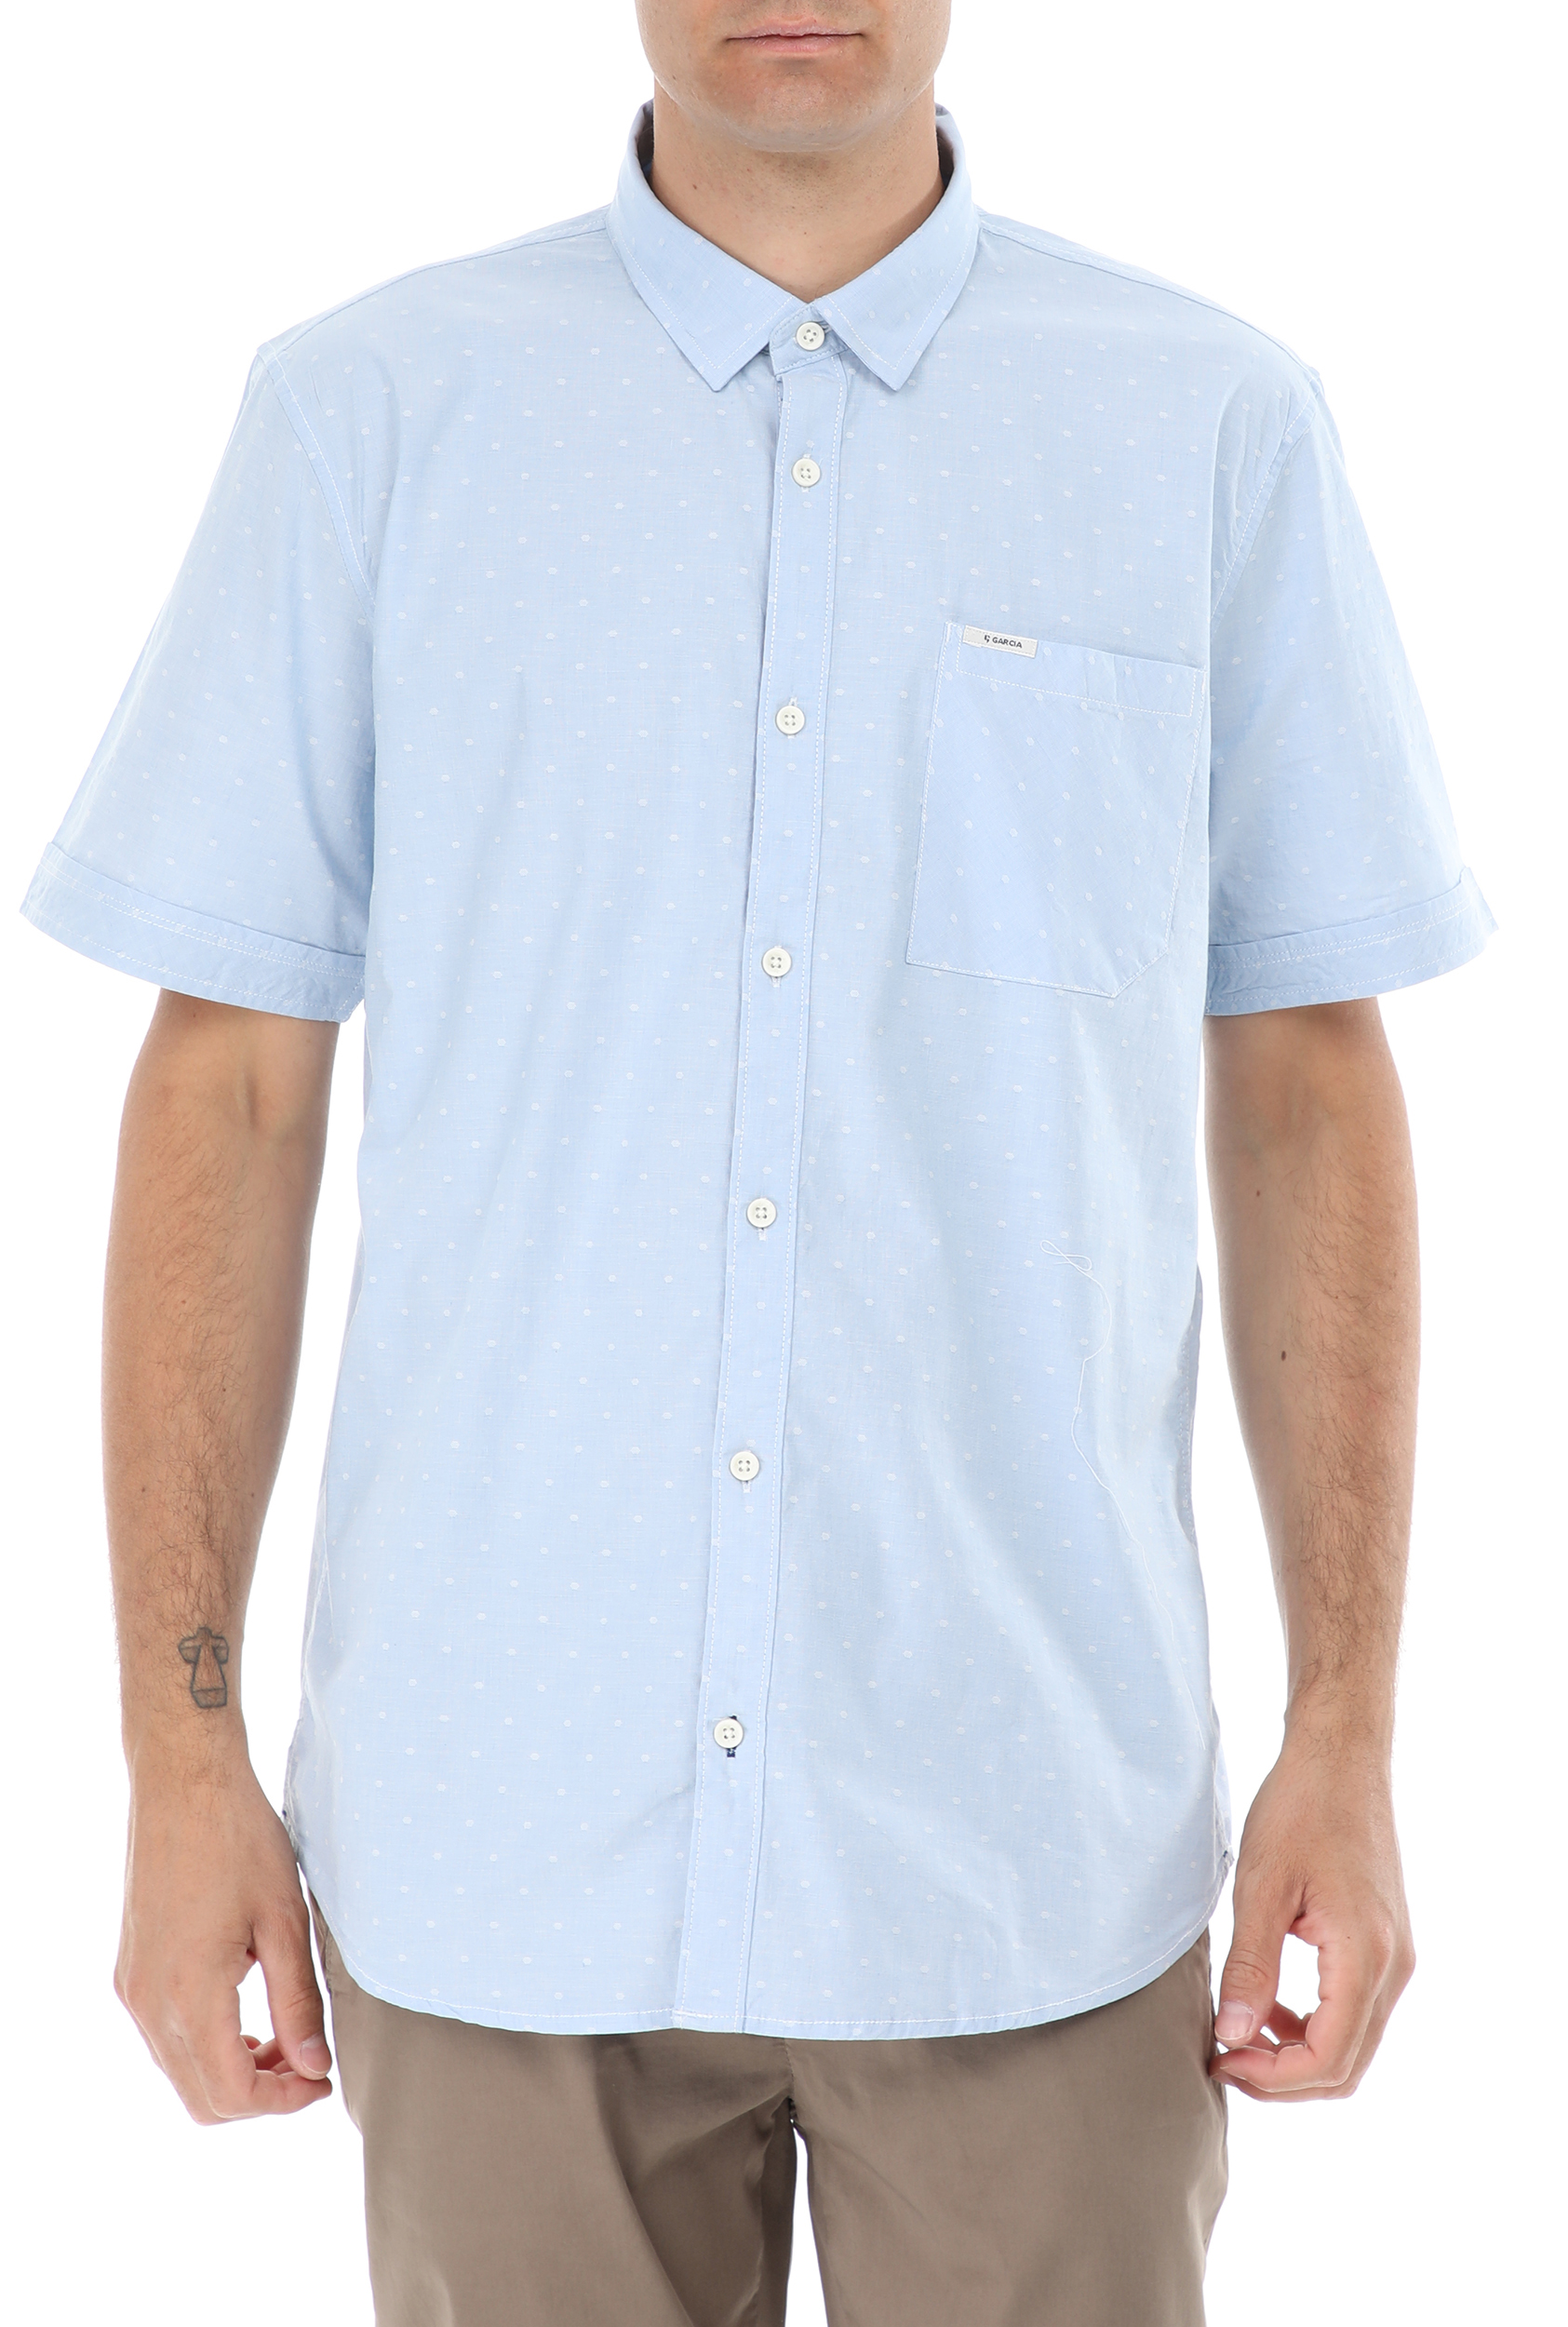 Ανδρικά/Ρούχα/Πουκάμισα/Κοντομάνικα-Αμάνικα GARCIA JEANS - Ανδρικό πουκάμισο GARCIA JEANS γαλάζιο λευκό